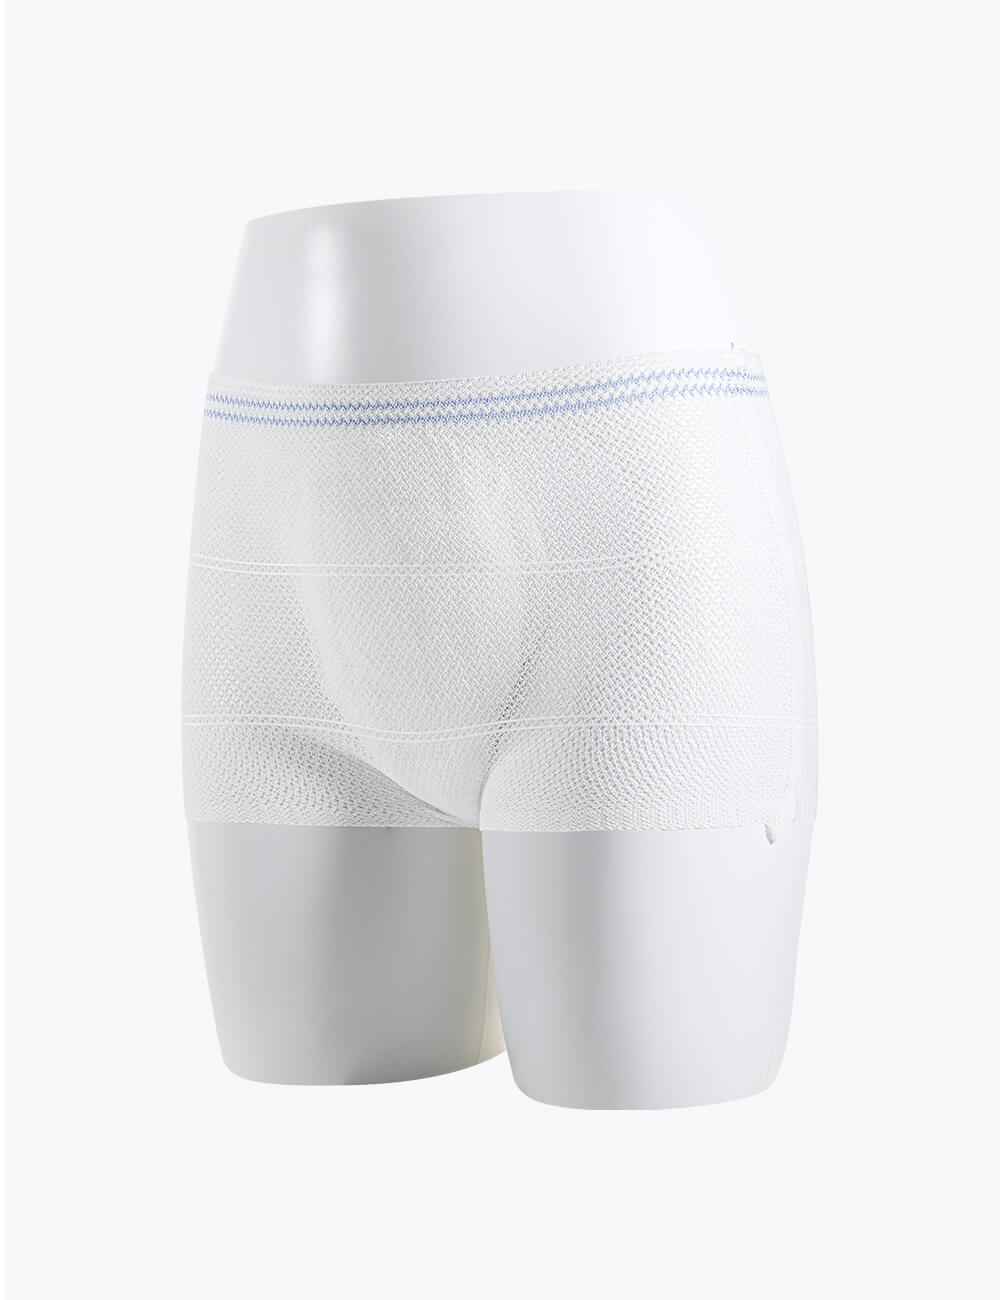 Disposable Cotton Underwear, Disposable Postpartum Panties Super